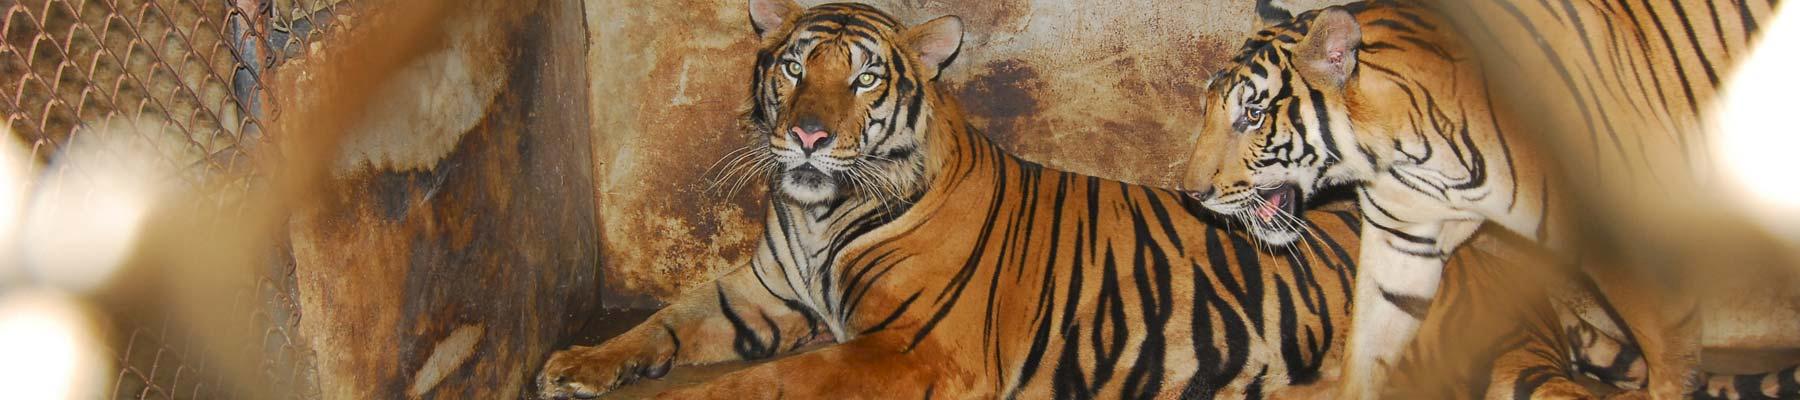 Caged tigers © Anton Vorauer / WWF 